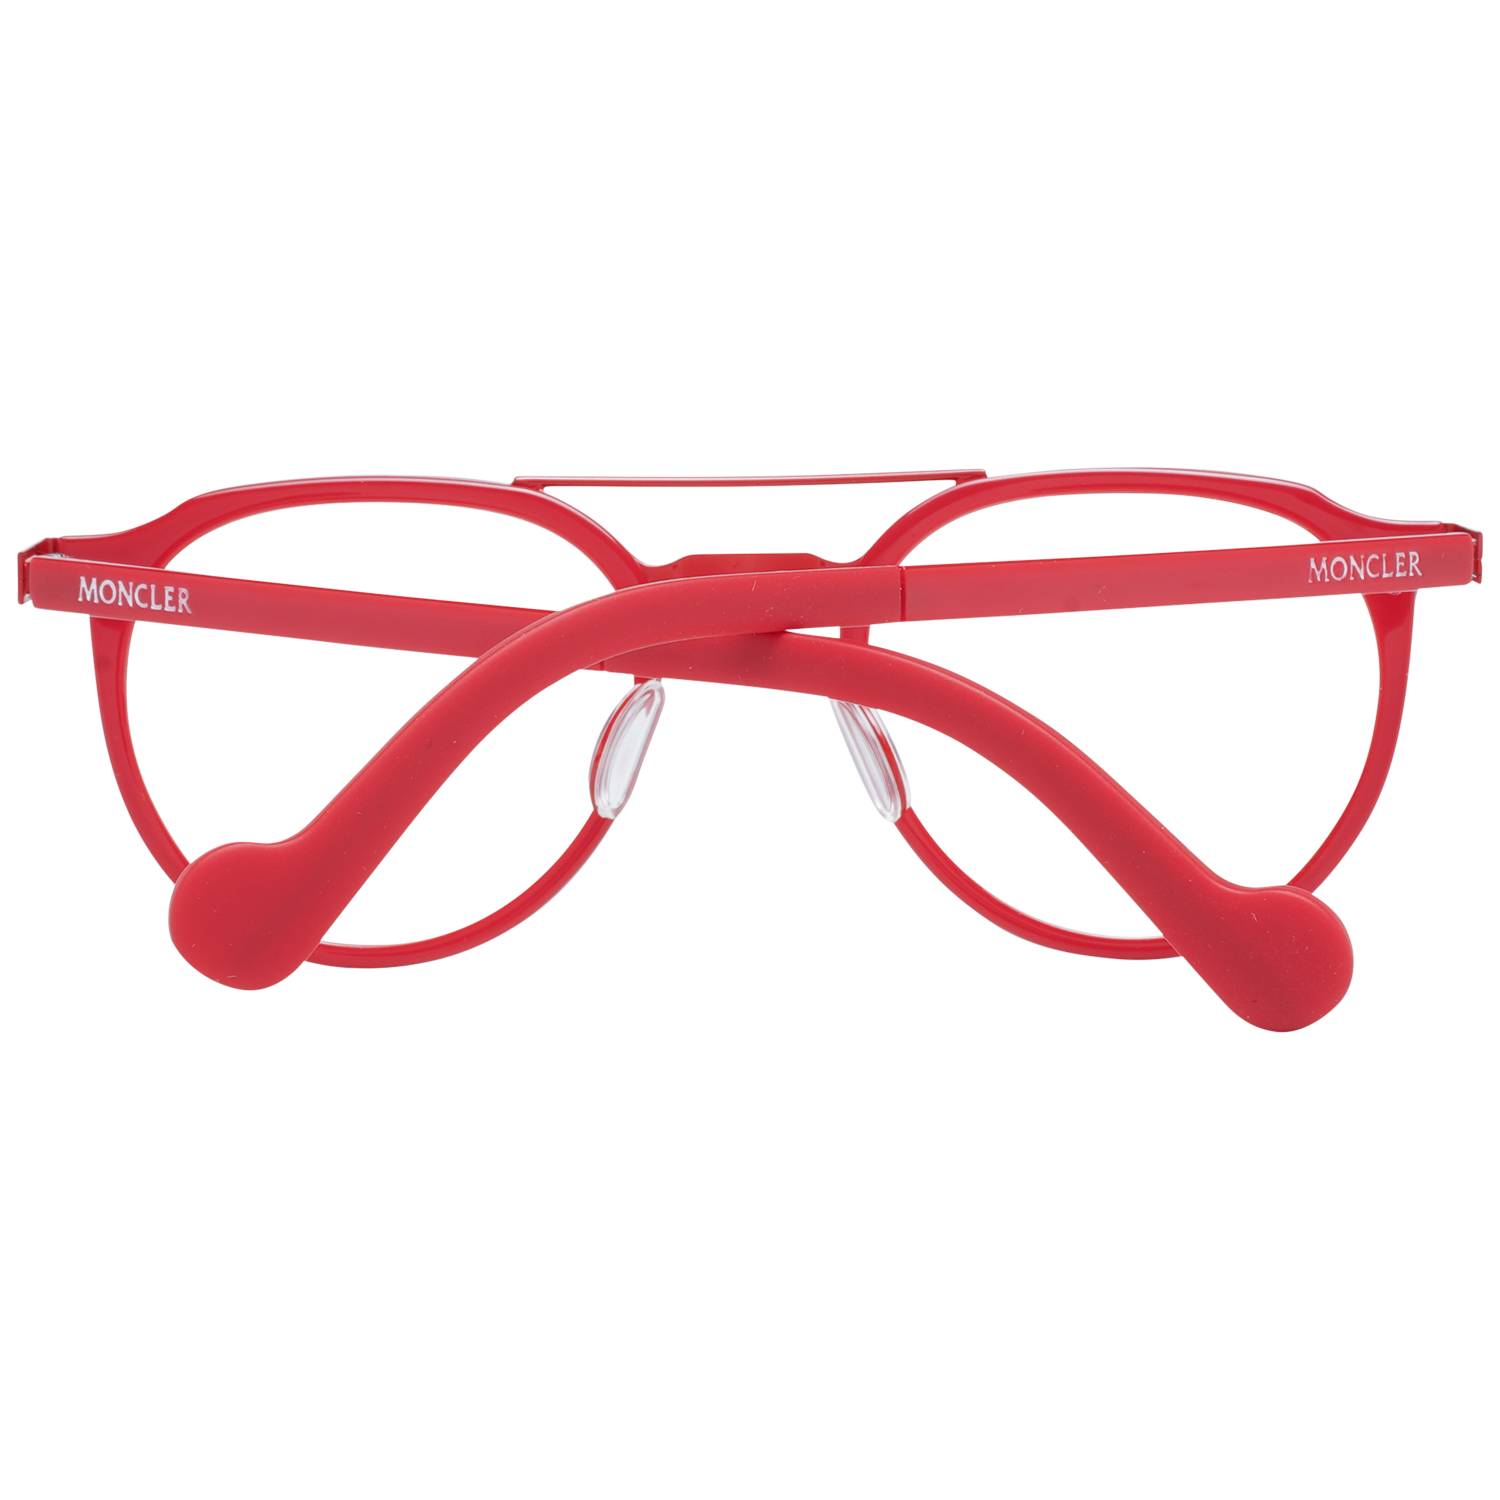 Moncler Eyeglasses Moncler Glasses Frames ML5036 066 49mm Eyeglasses Eyewear UK USA Australia 